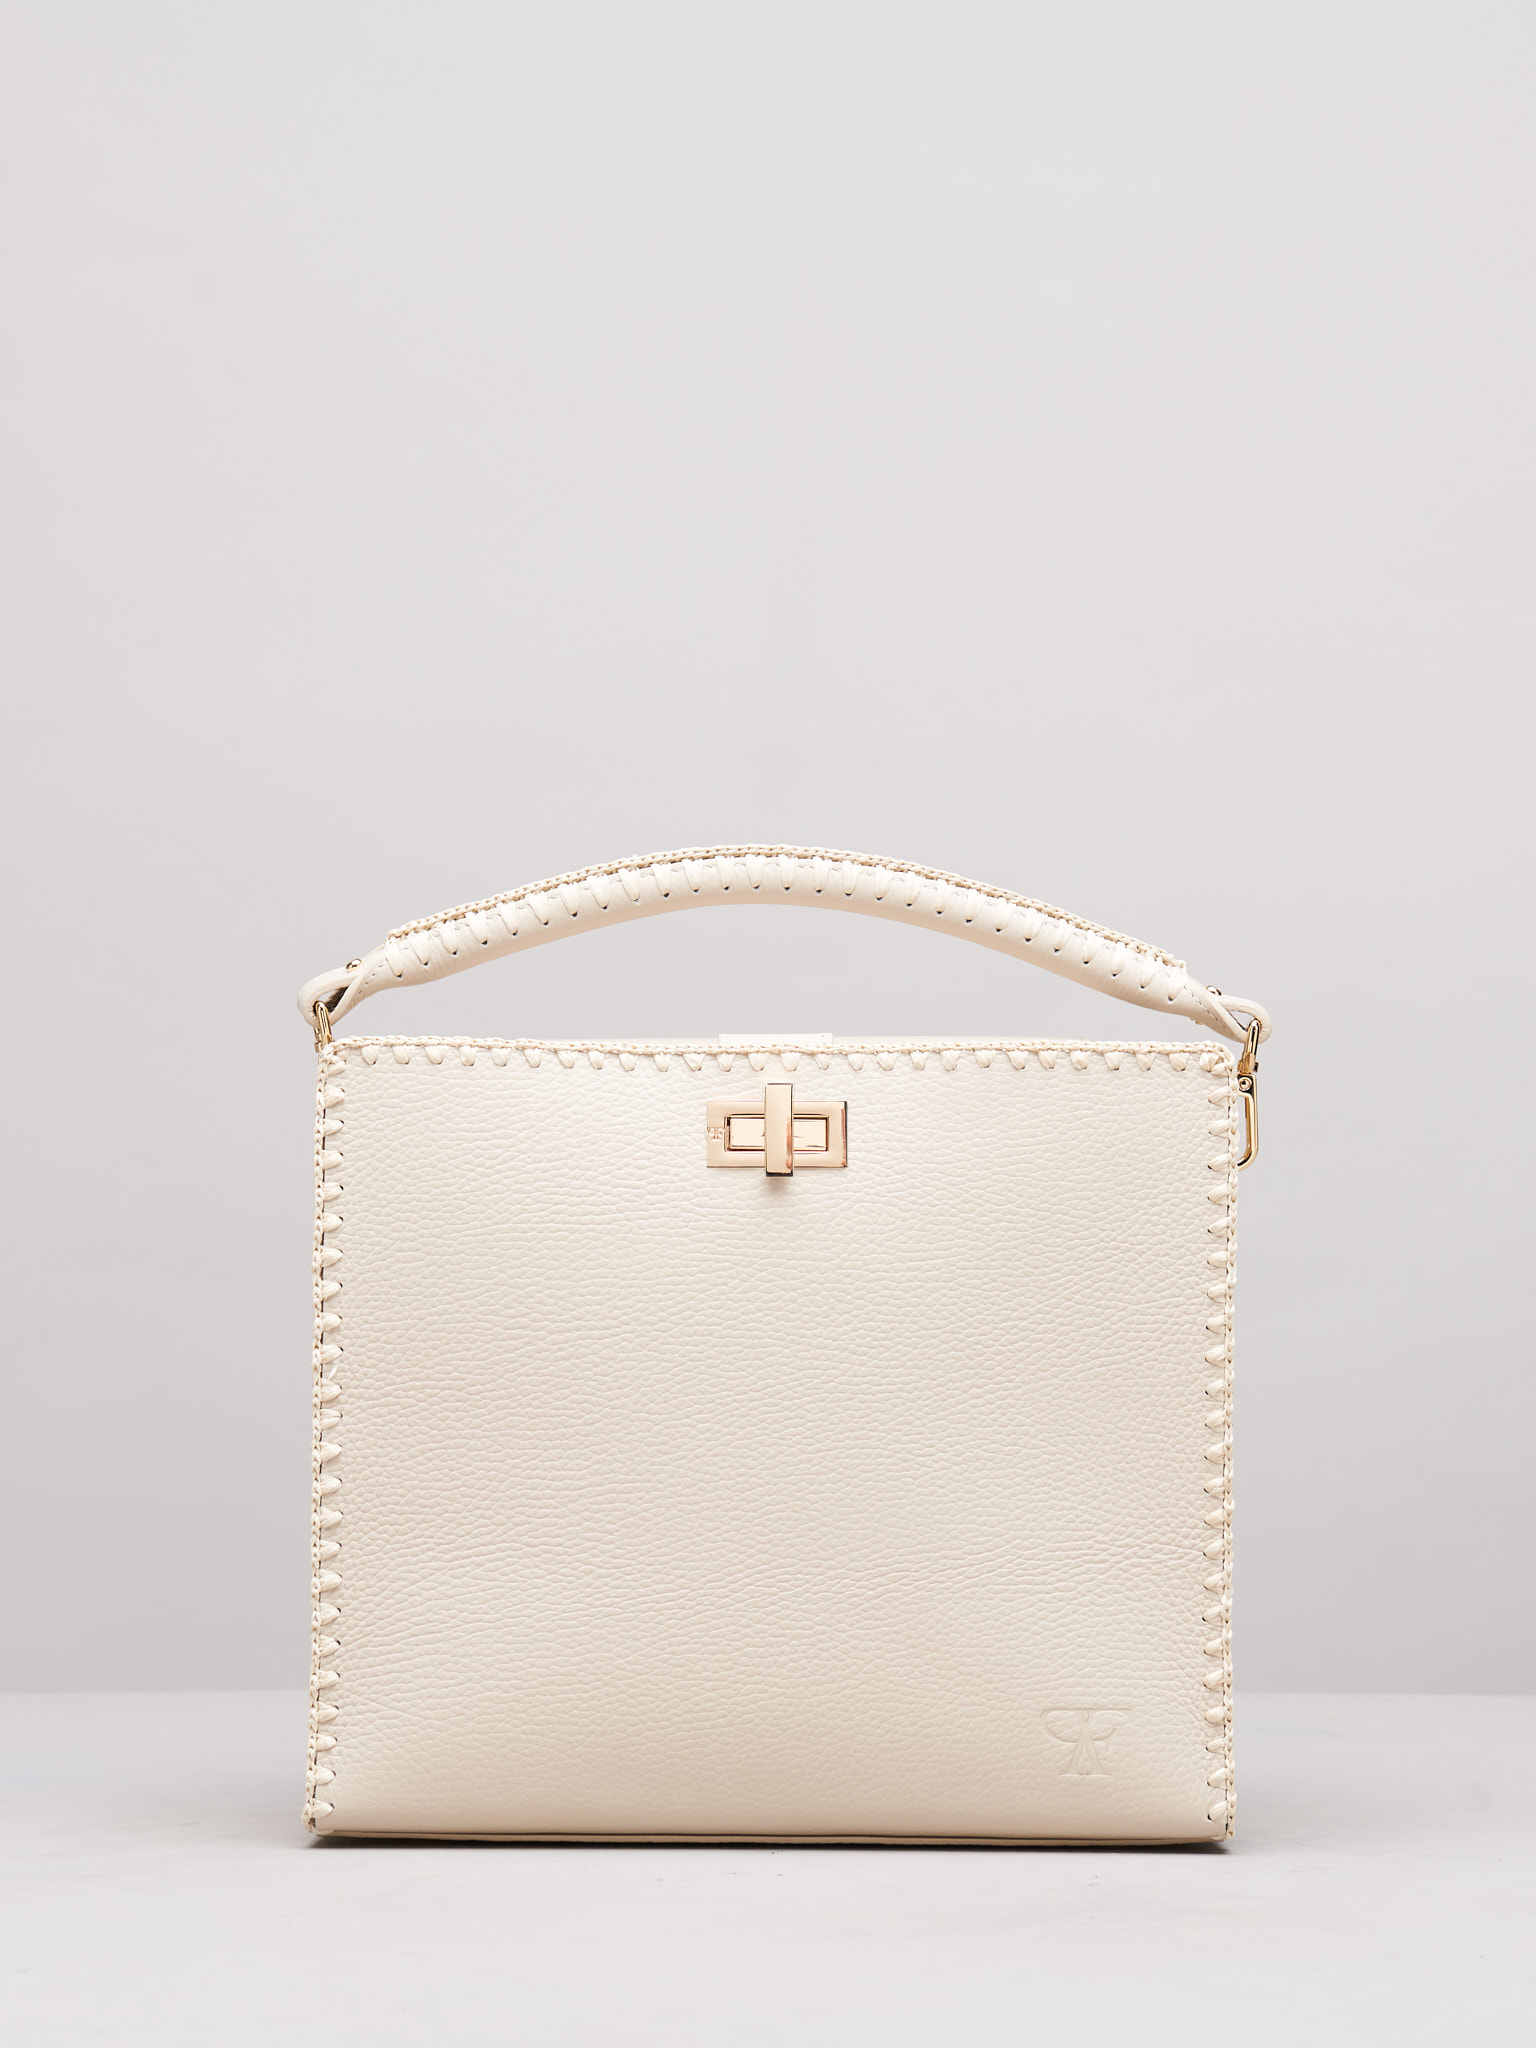 Sylvia Grande Handbag in Burro